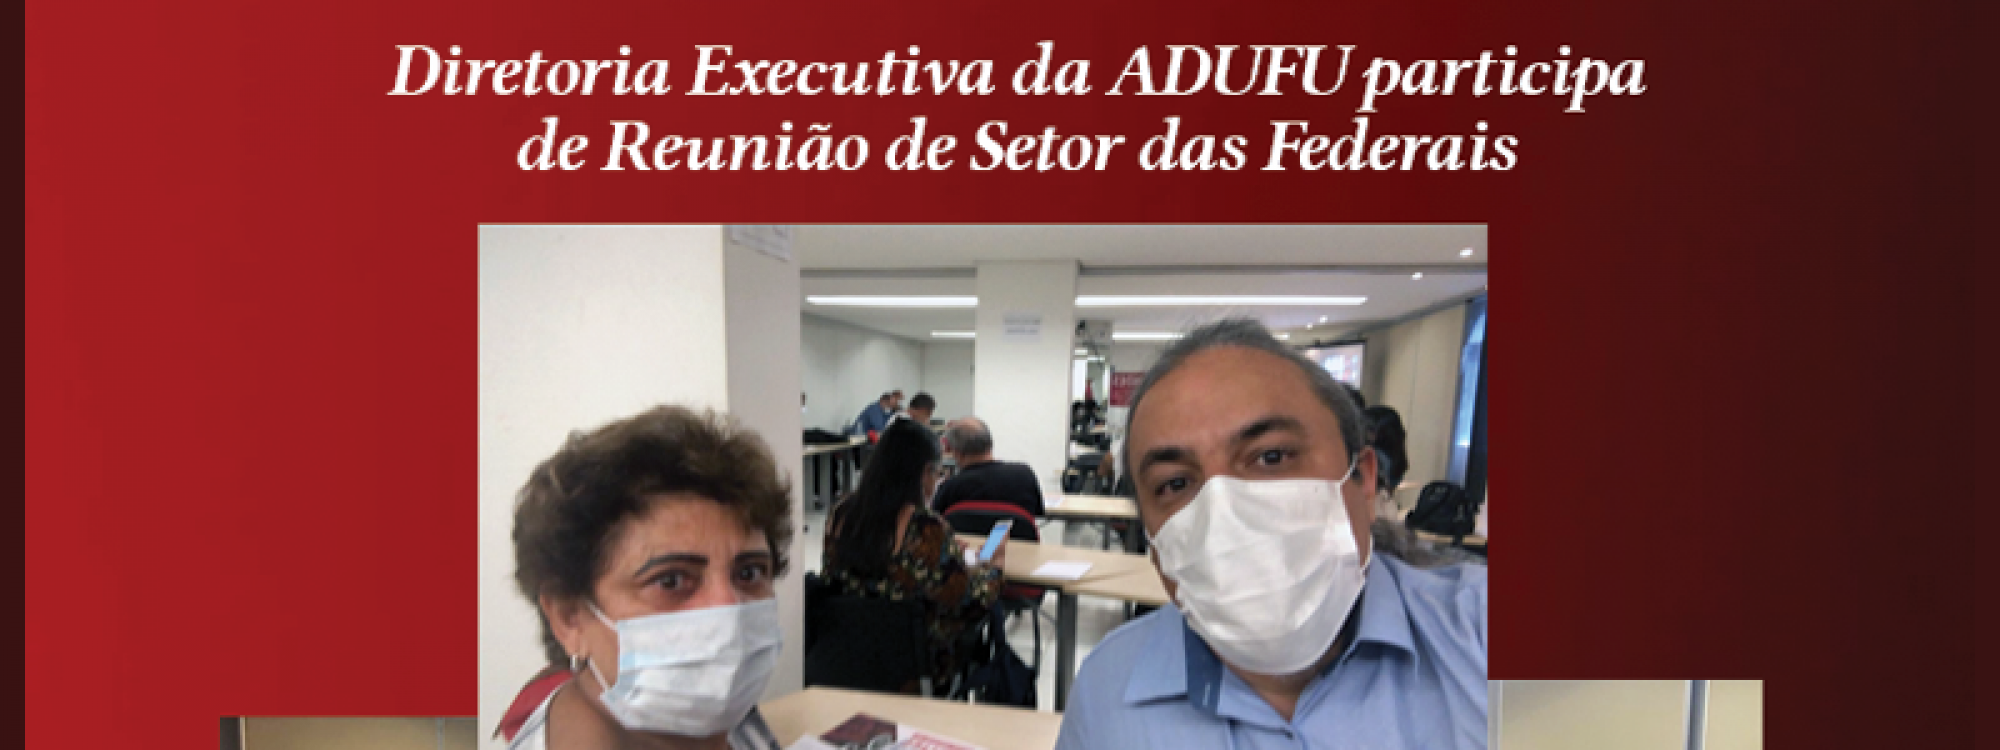 ADUFU participa da reunião de setor das Federais em Brasília